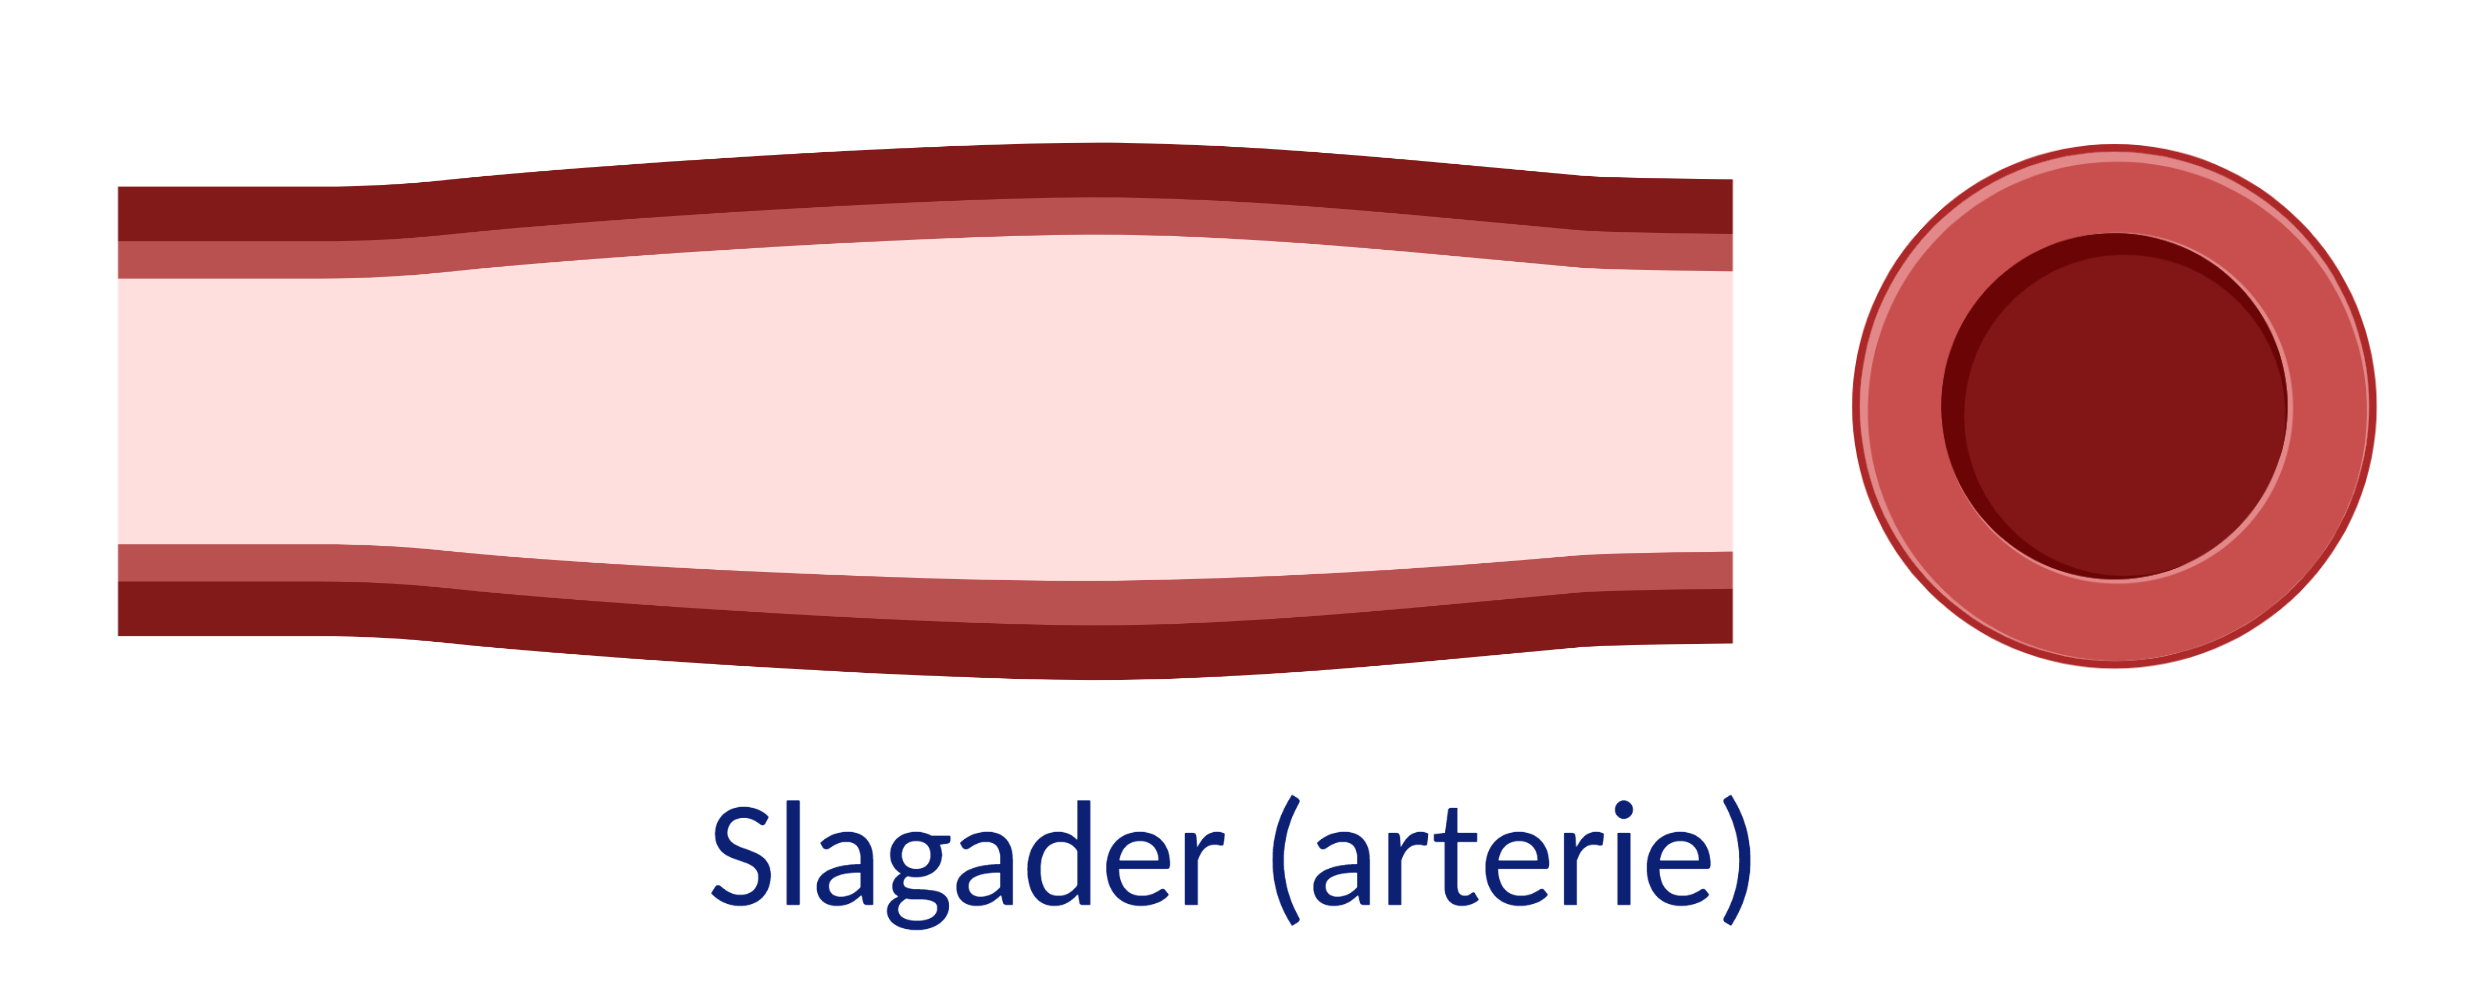 slagader of arterie